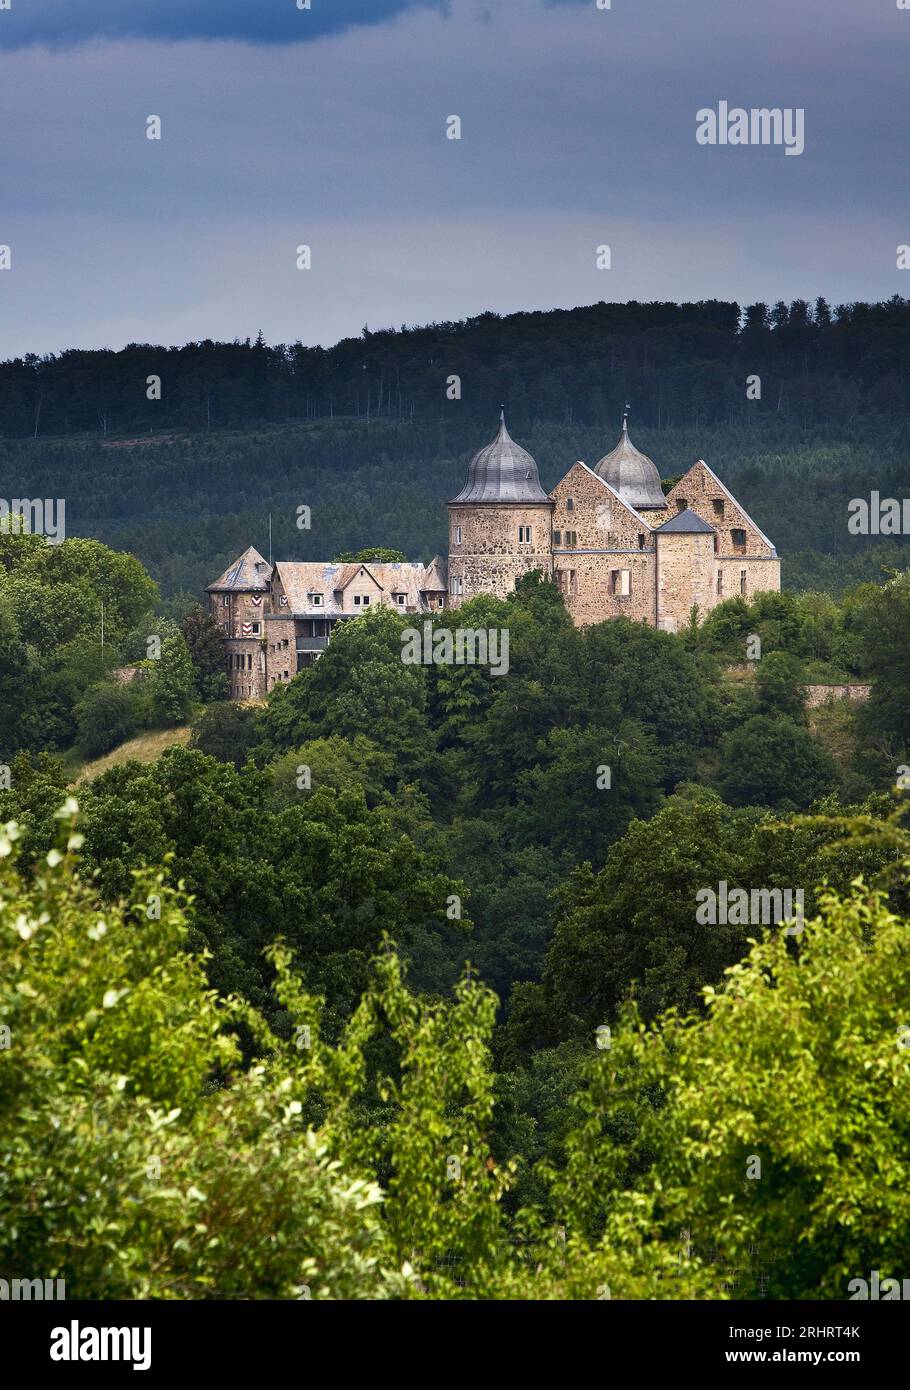 Sababurg, popolarmente conosciuto come Castello della bella addormentata in onore dei Fratelli Grimm, Germania, Assia, Hofgeismar Foto Stock